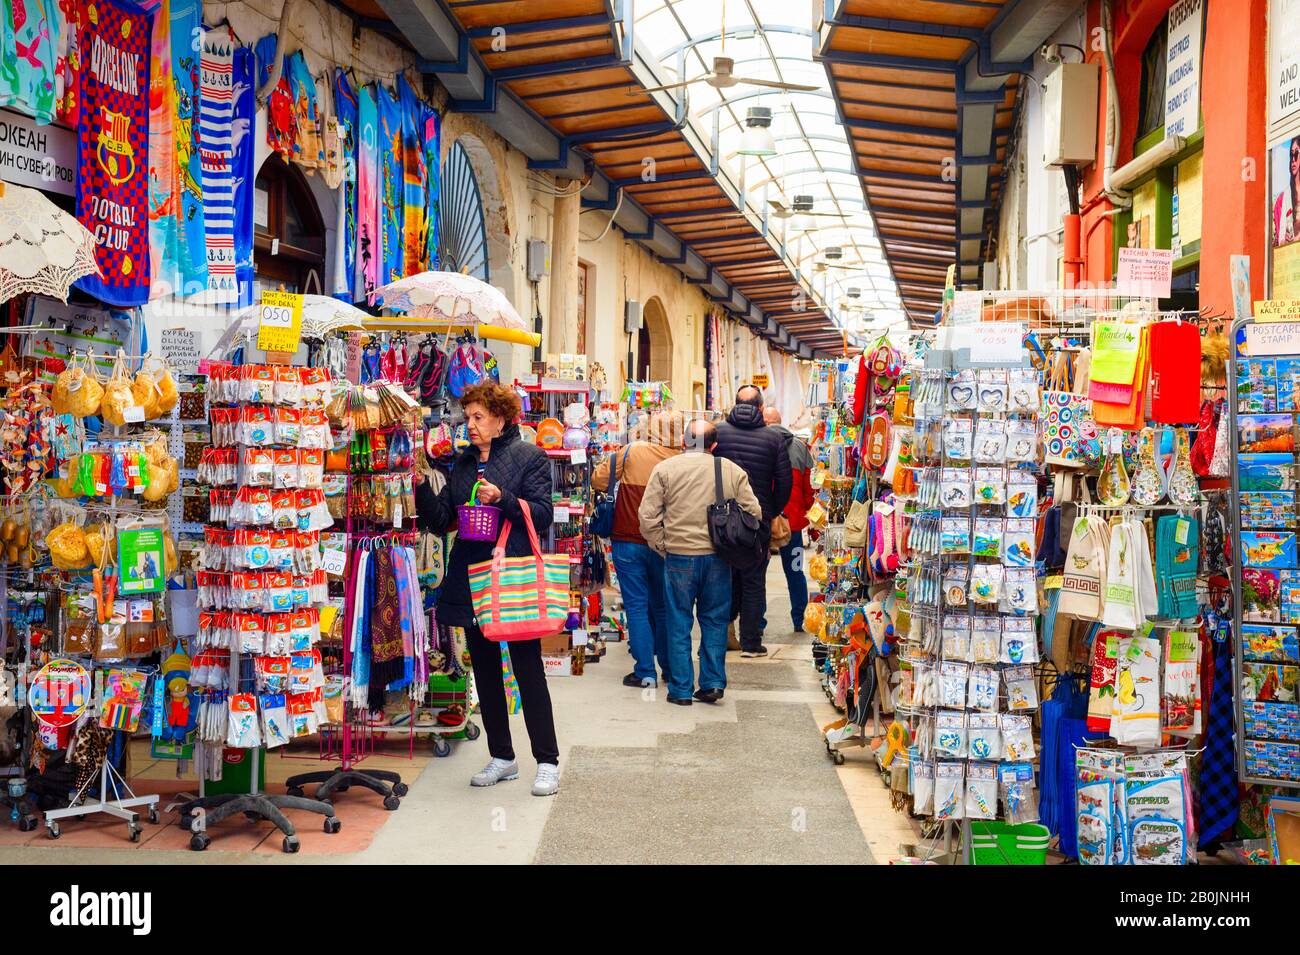 Larnaca, ZYPERN - 16. FEBRUAR 2020: Souvenirmarkt für Touristen im Pavillon, Menschen, die in Reihe zwischen Geschäften mit Waren laufen Stockfoto